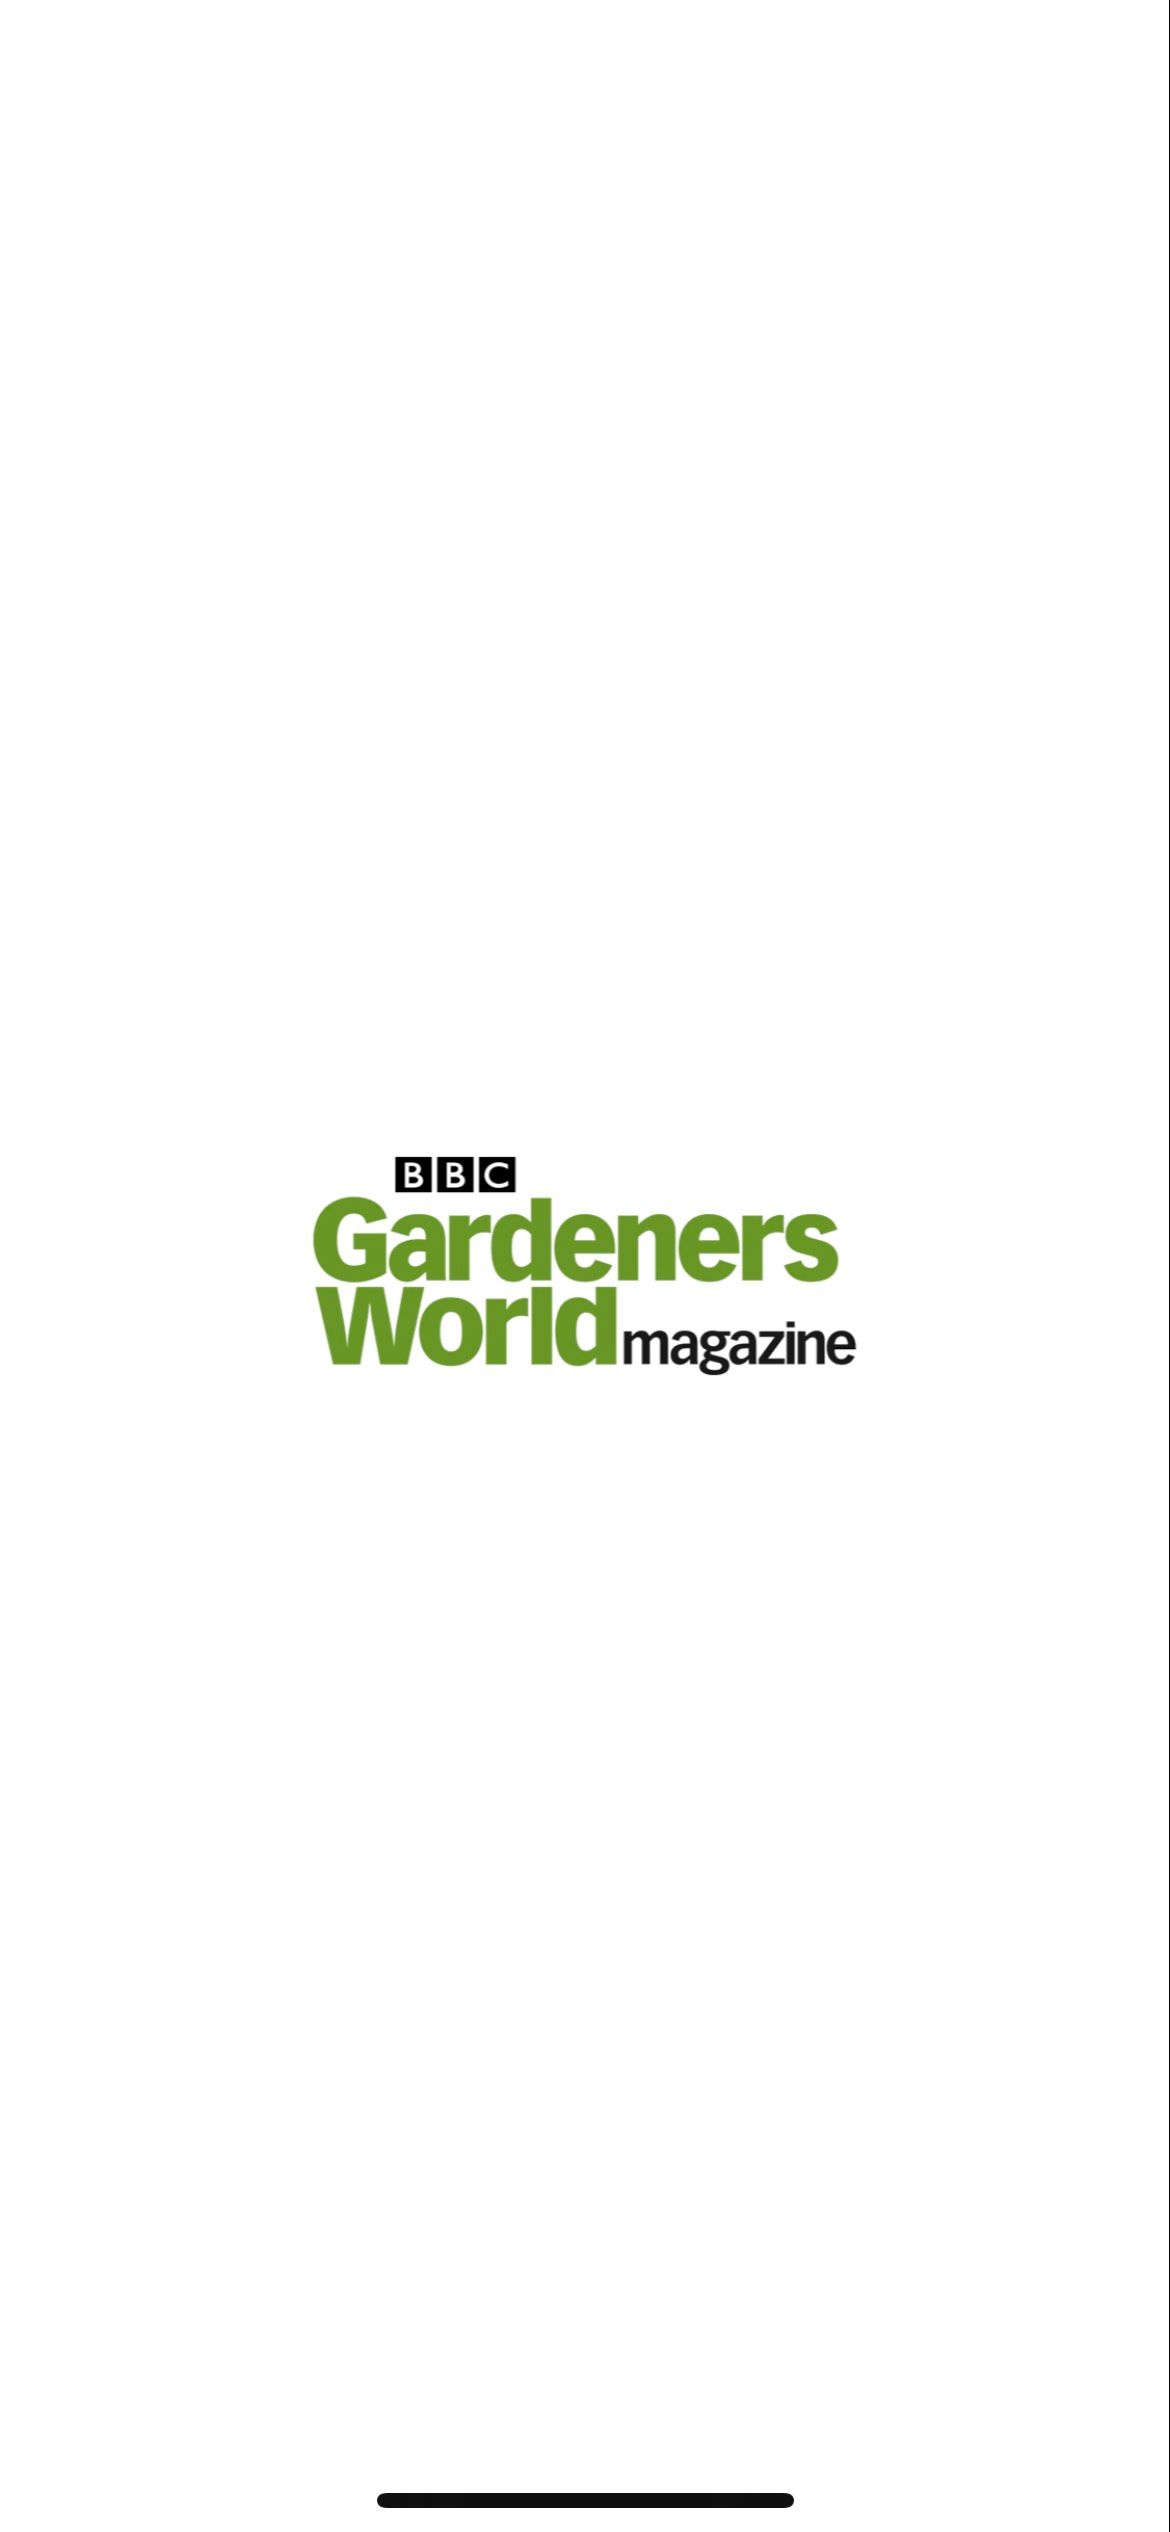 BBC Gardeners App Welcome